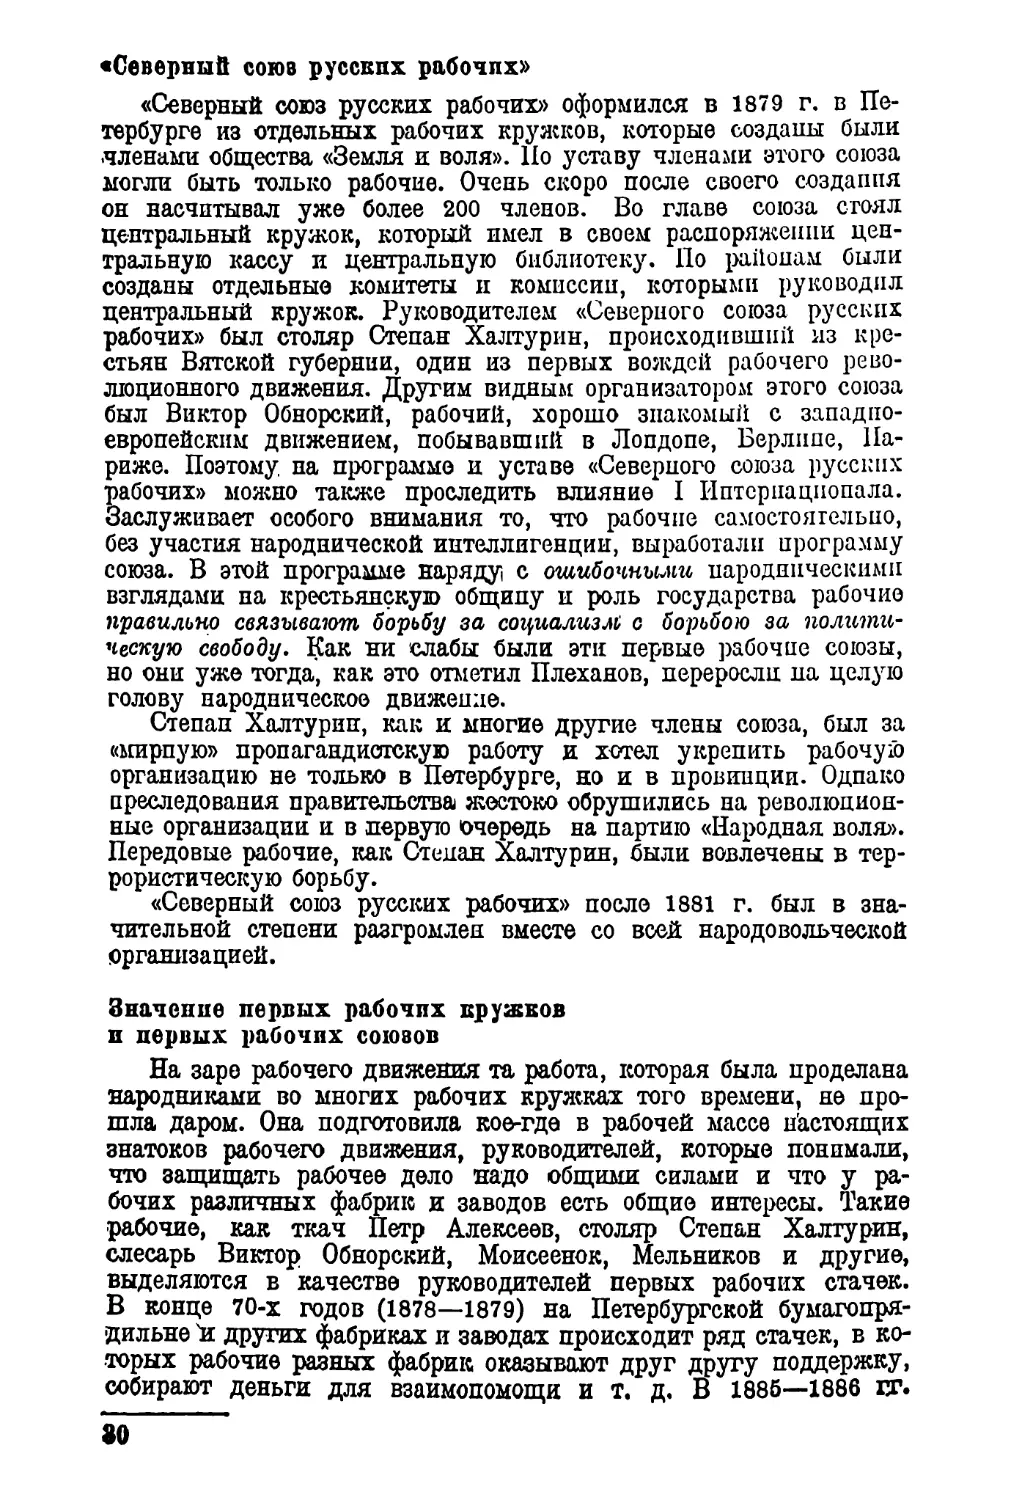 «Северный союз русских рабочих»
Значение первых рабочих кружков и первых рабочих союзов